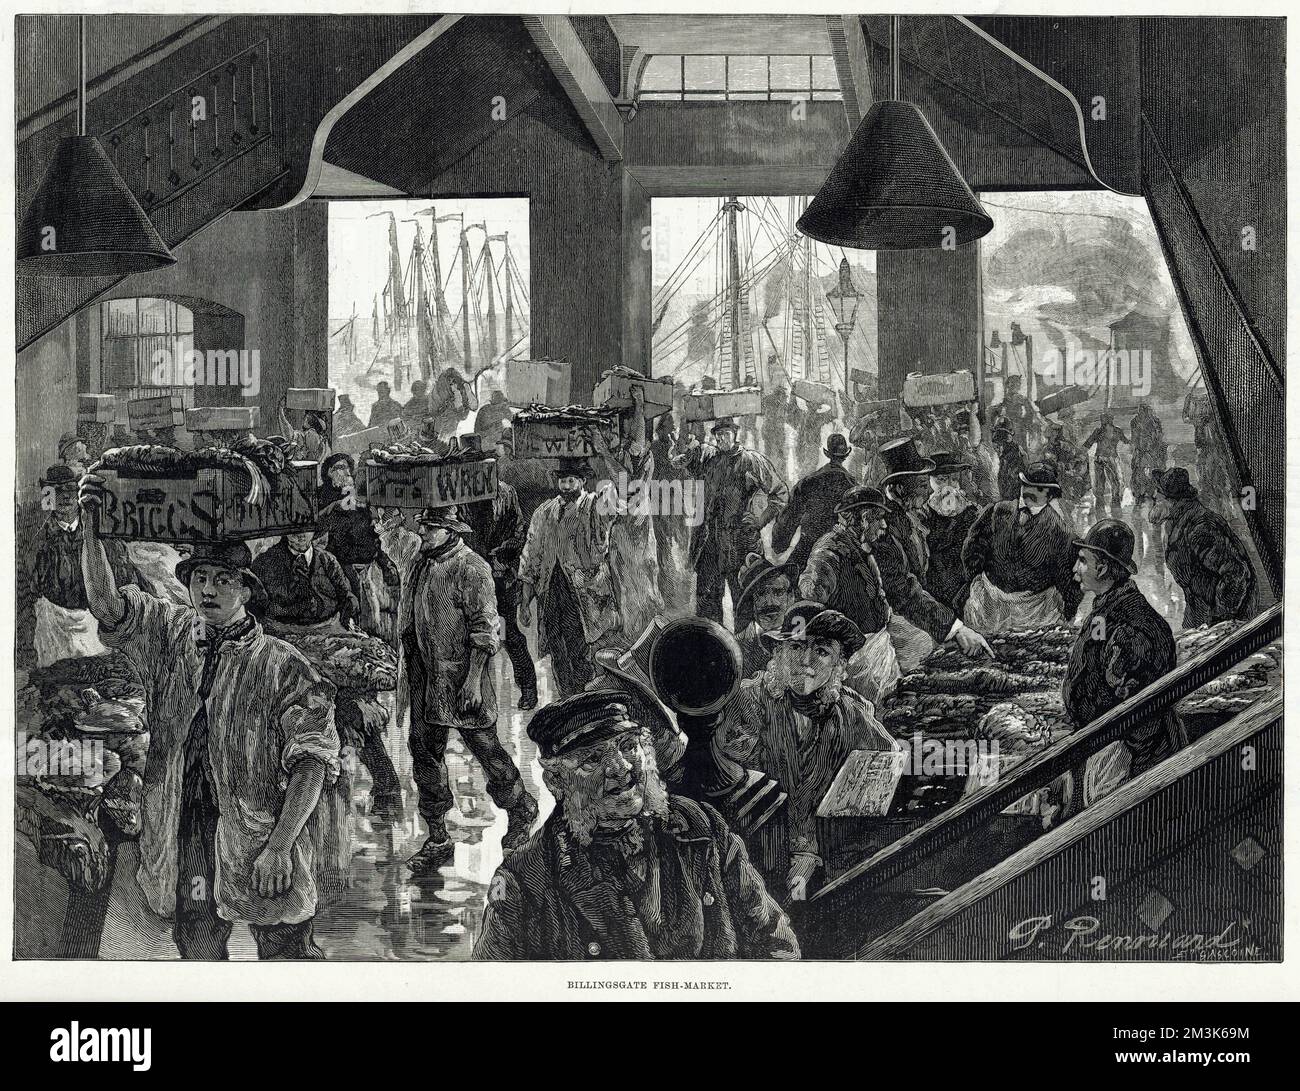 All'interno del Billingsgate Fish Market di Londra. I commercianti che osservano il pesce ed i portieri che portano le casse del pesce, sulle loro teste, nel mercato. Data: 1886 Foto Stock